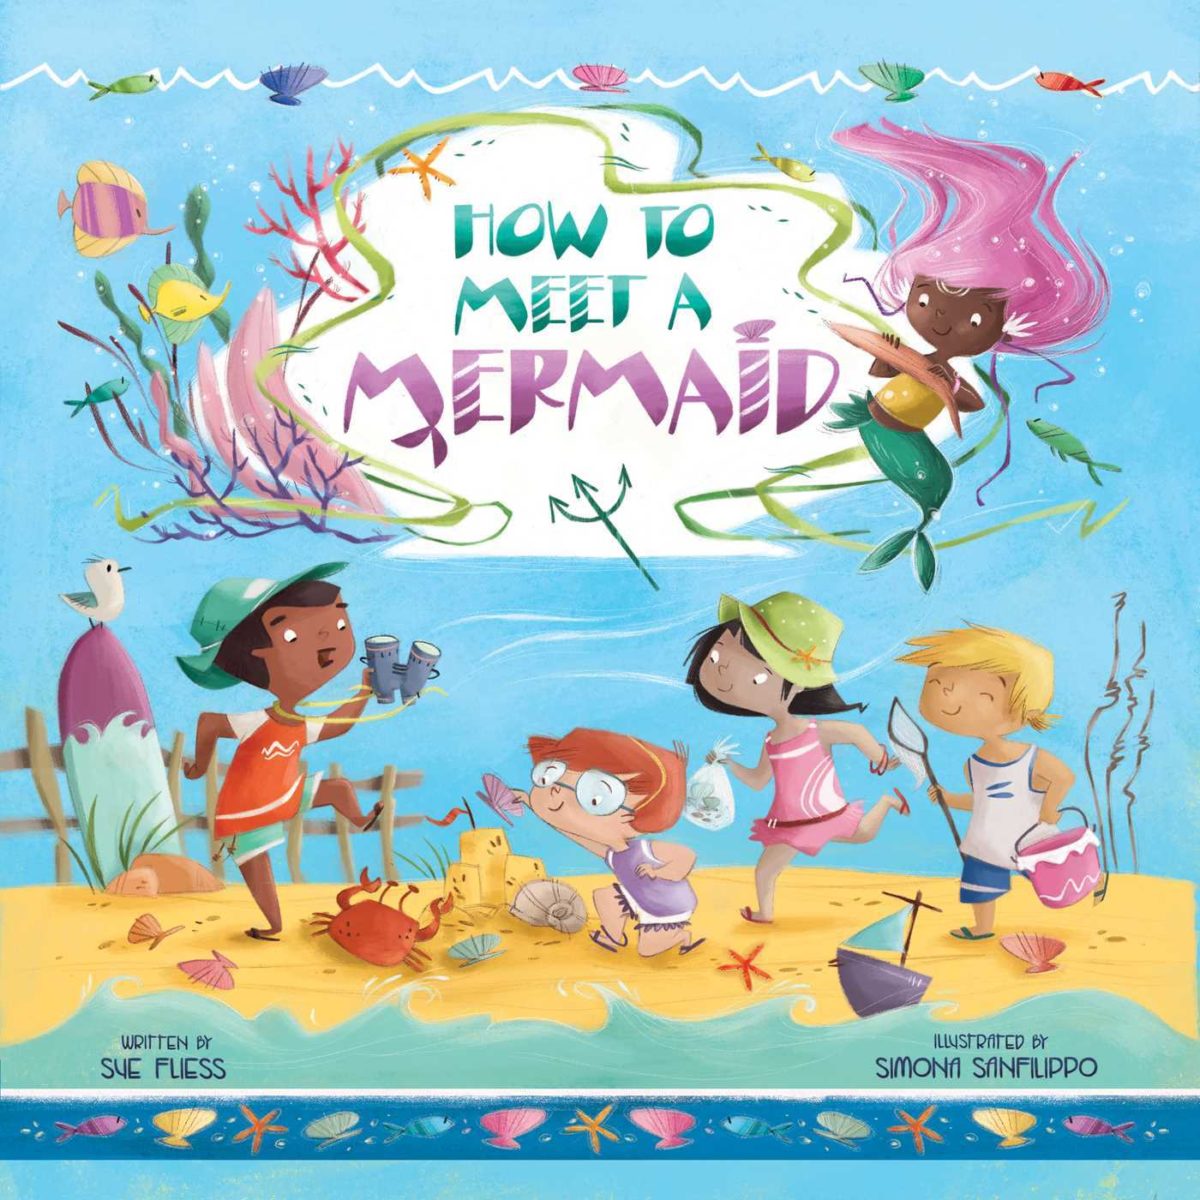 Mermaid Books for Kids 